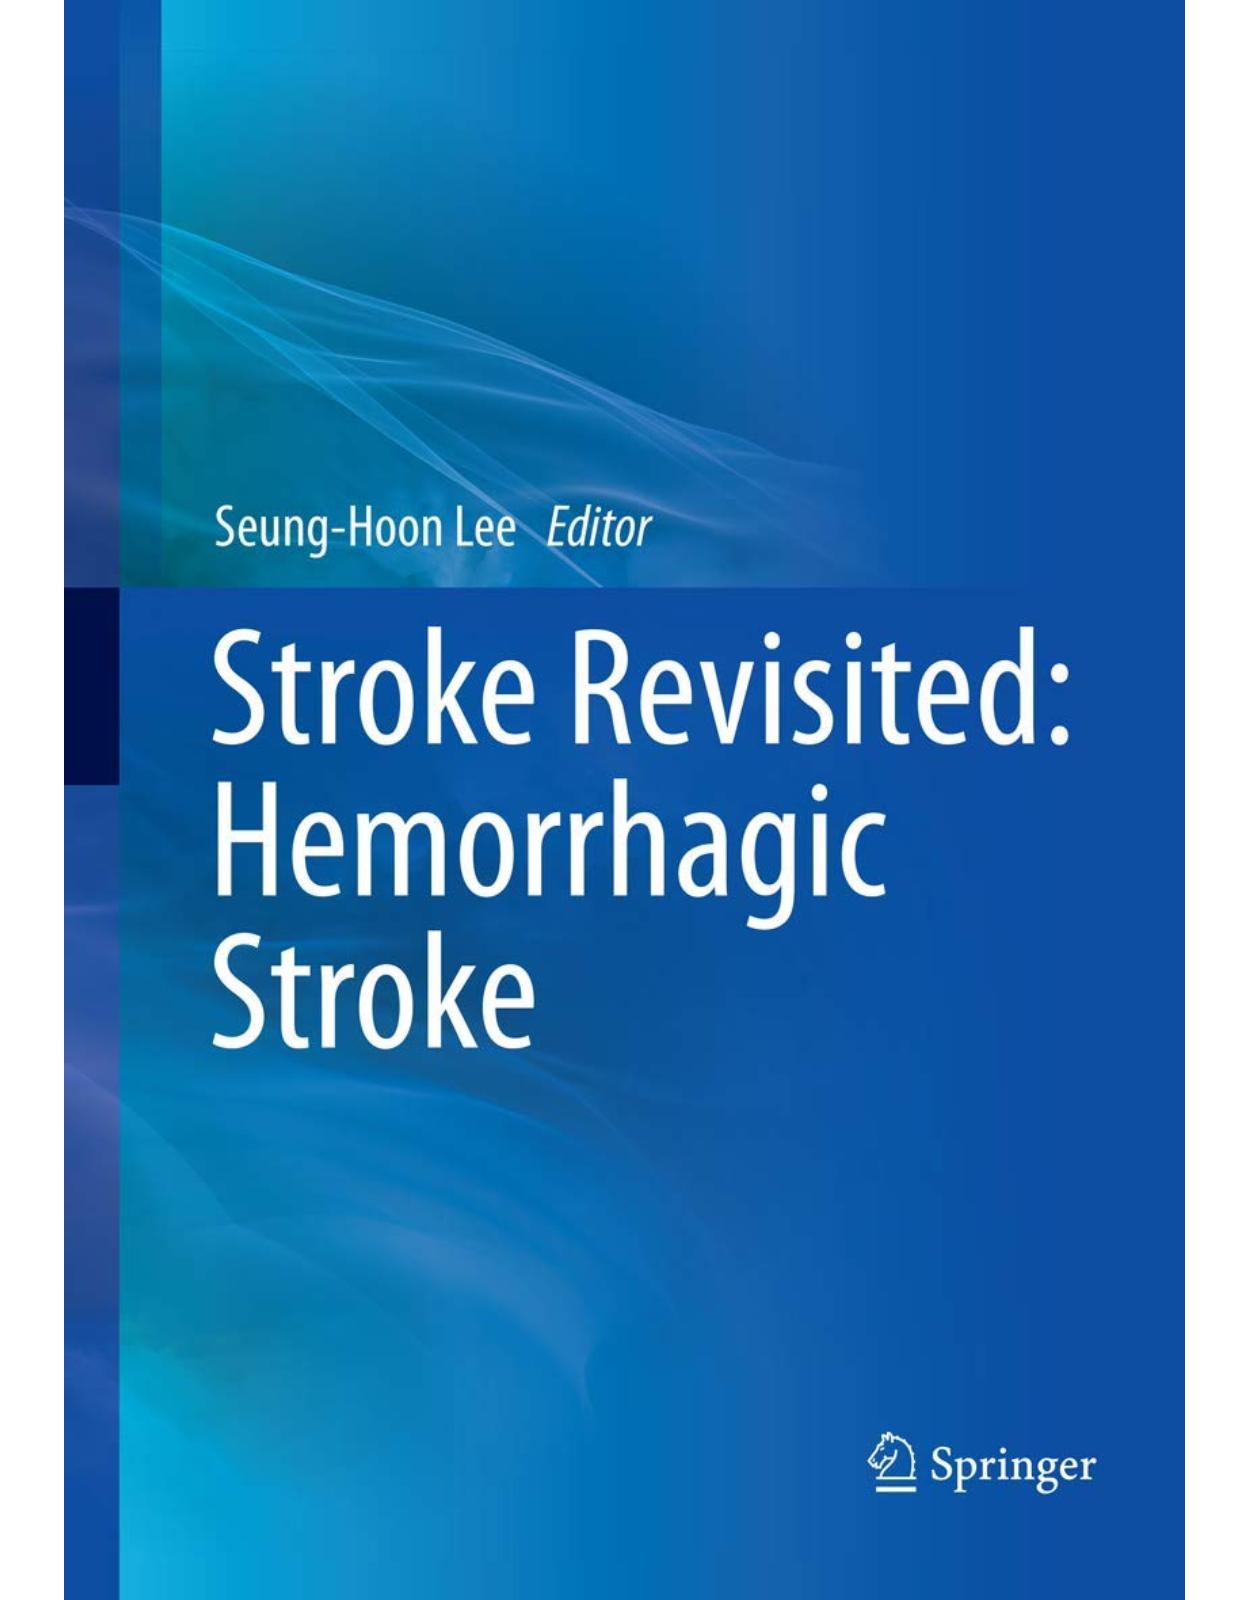 Stroke Revisited: Hemorrhagic Stroke